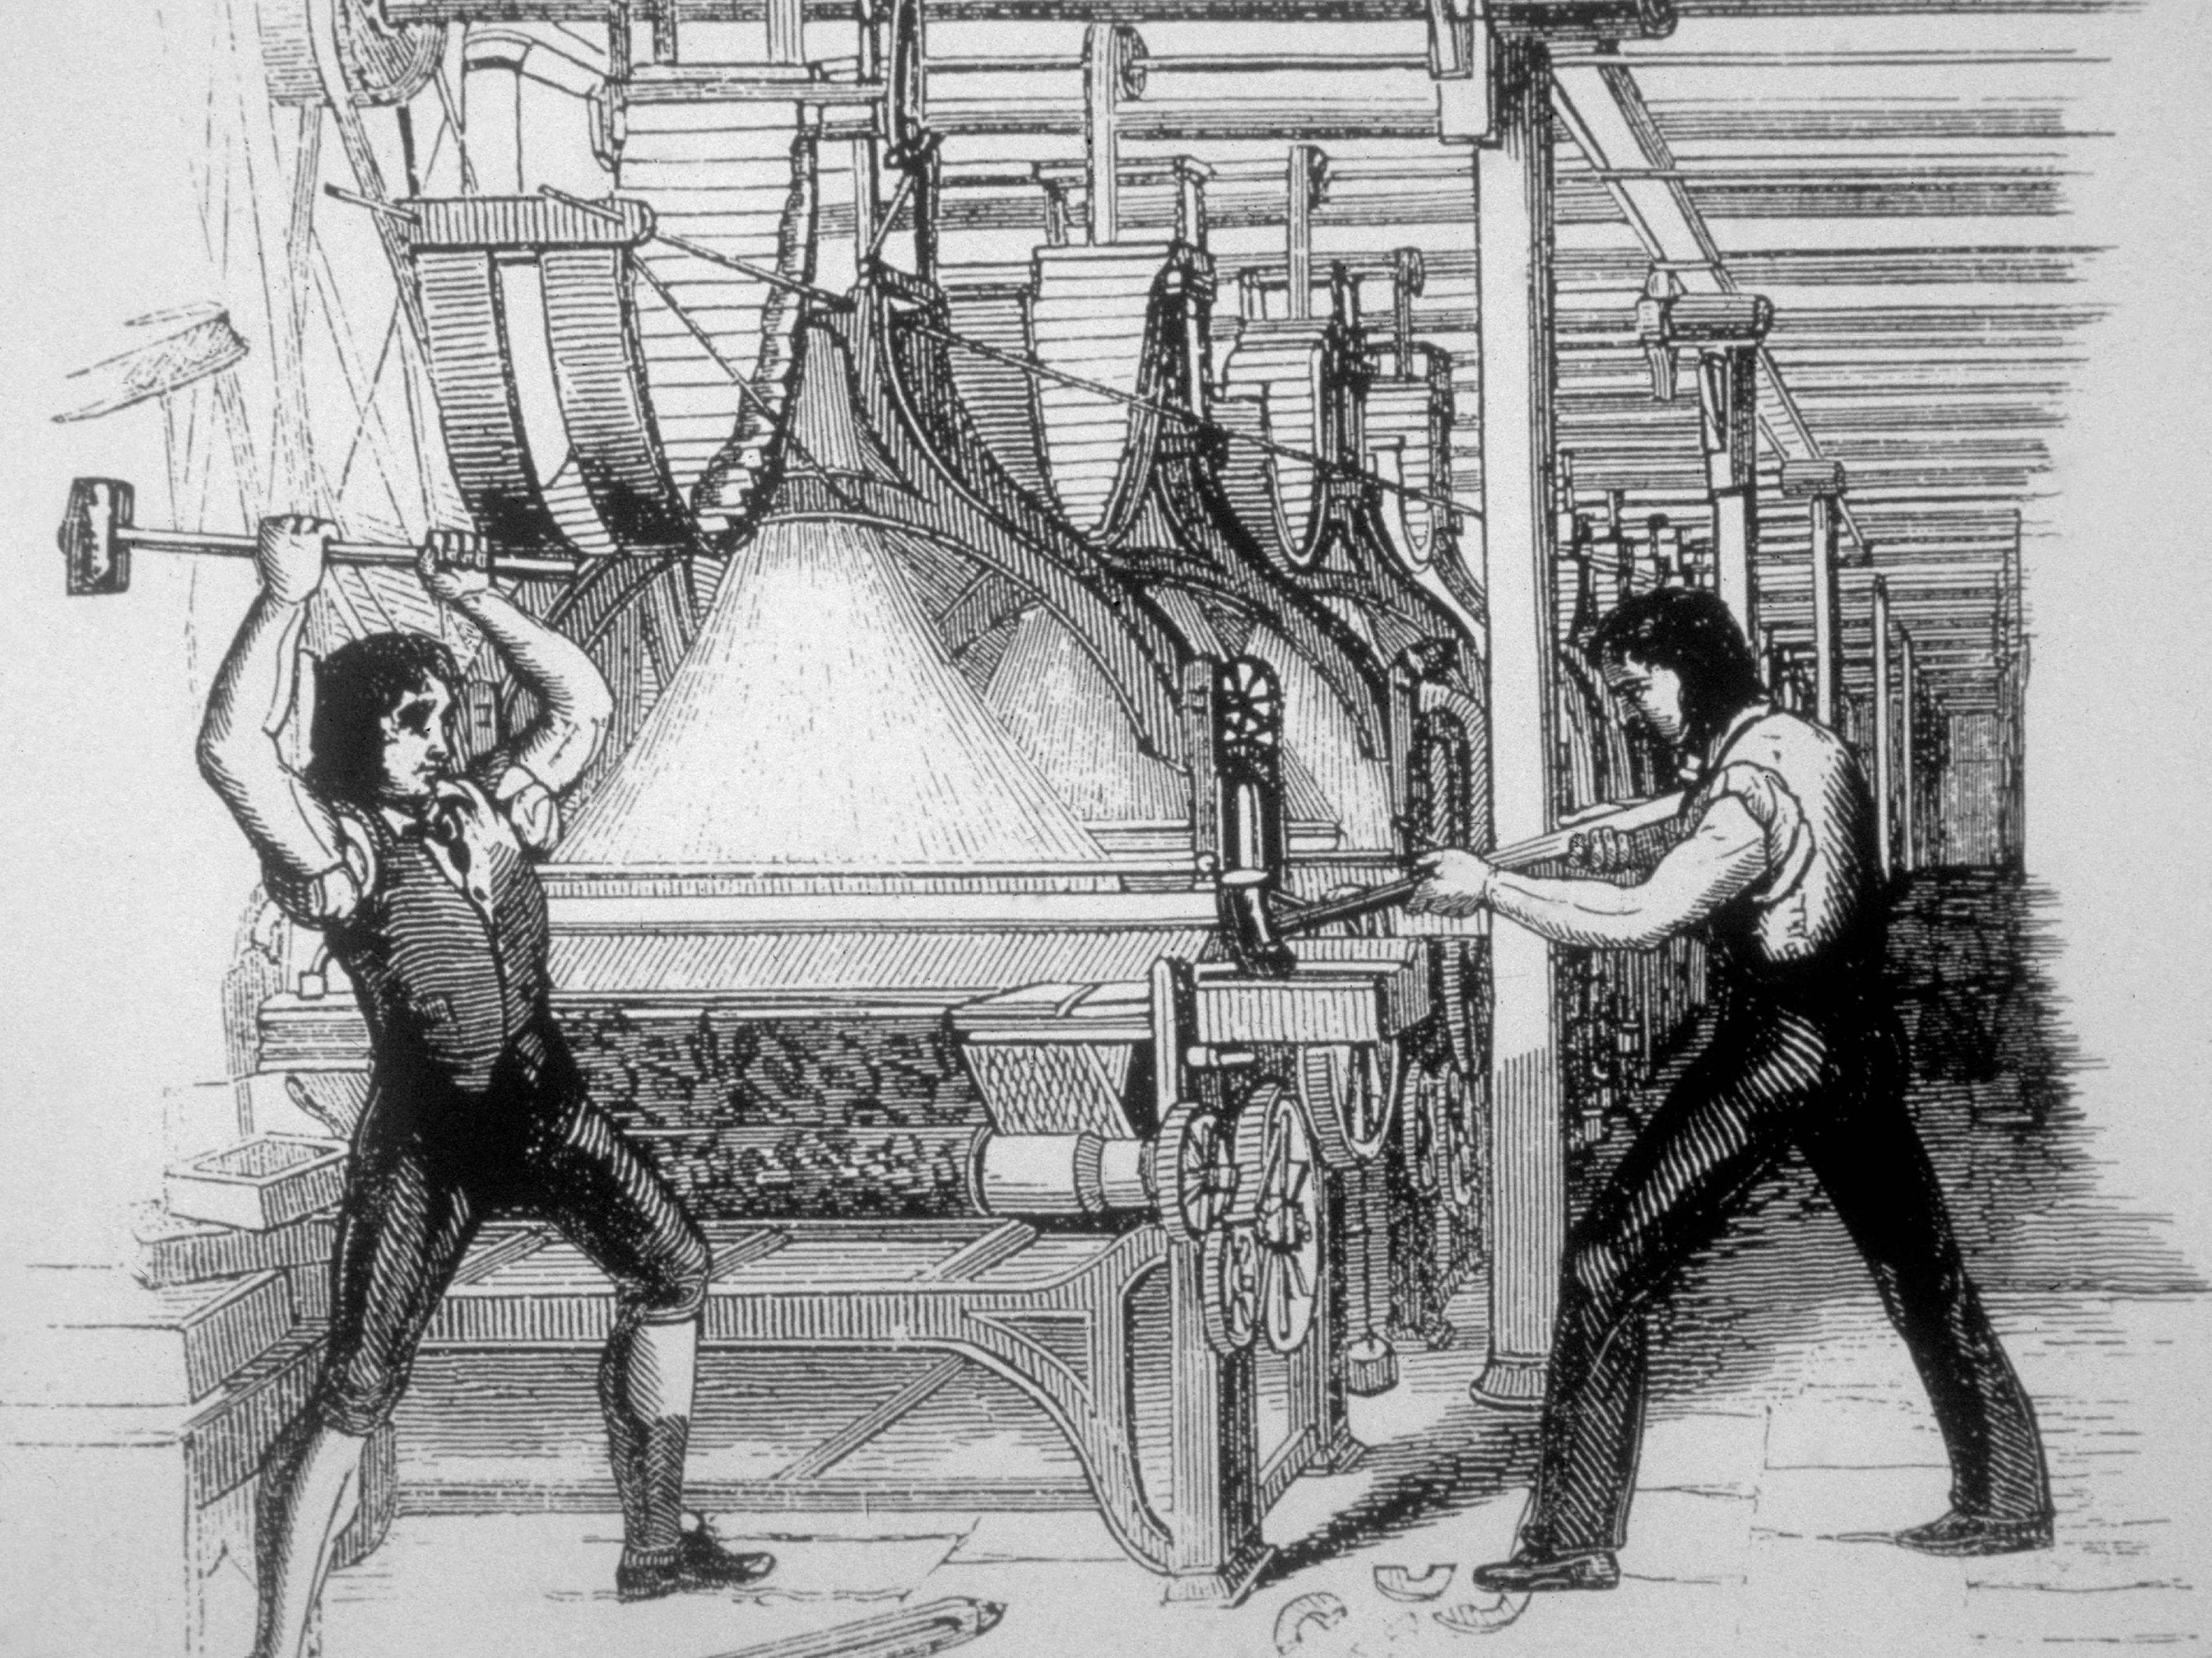 La tecnología lleva alterando el mercado laboral desde hace cientos de años, como demuestran estos luditas británicos del siglo XIX retratados destruyendo las máquinas de las fábricas. 